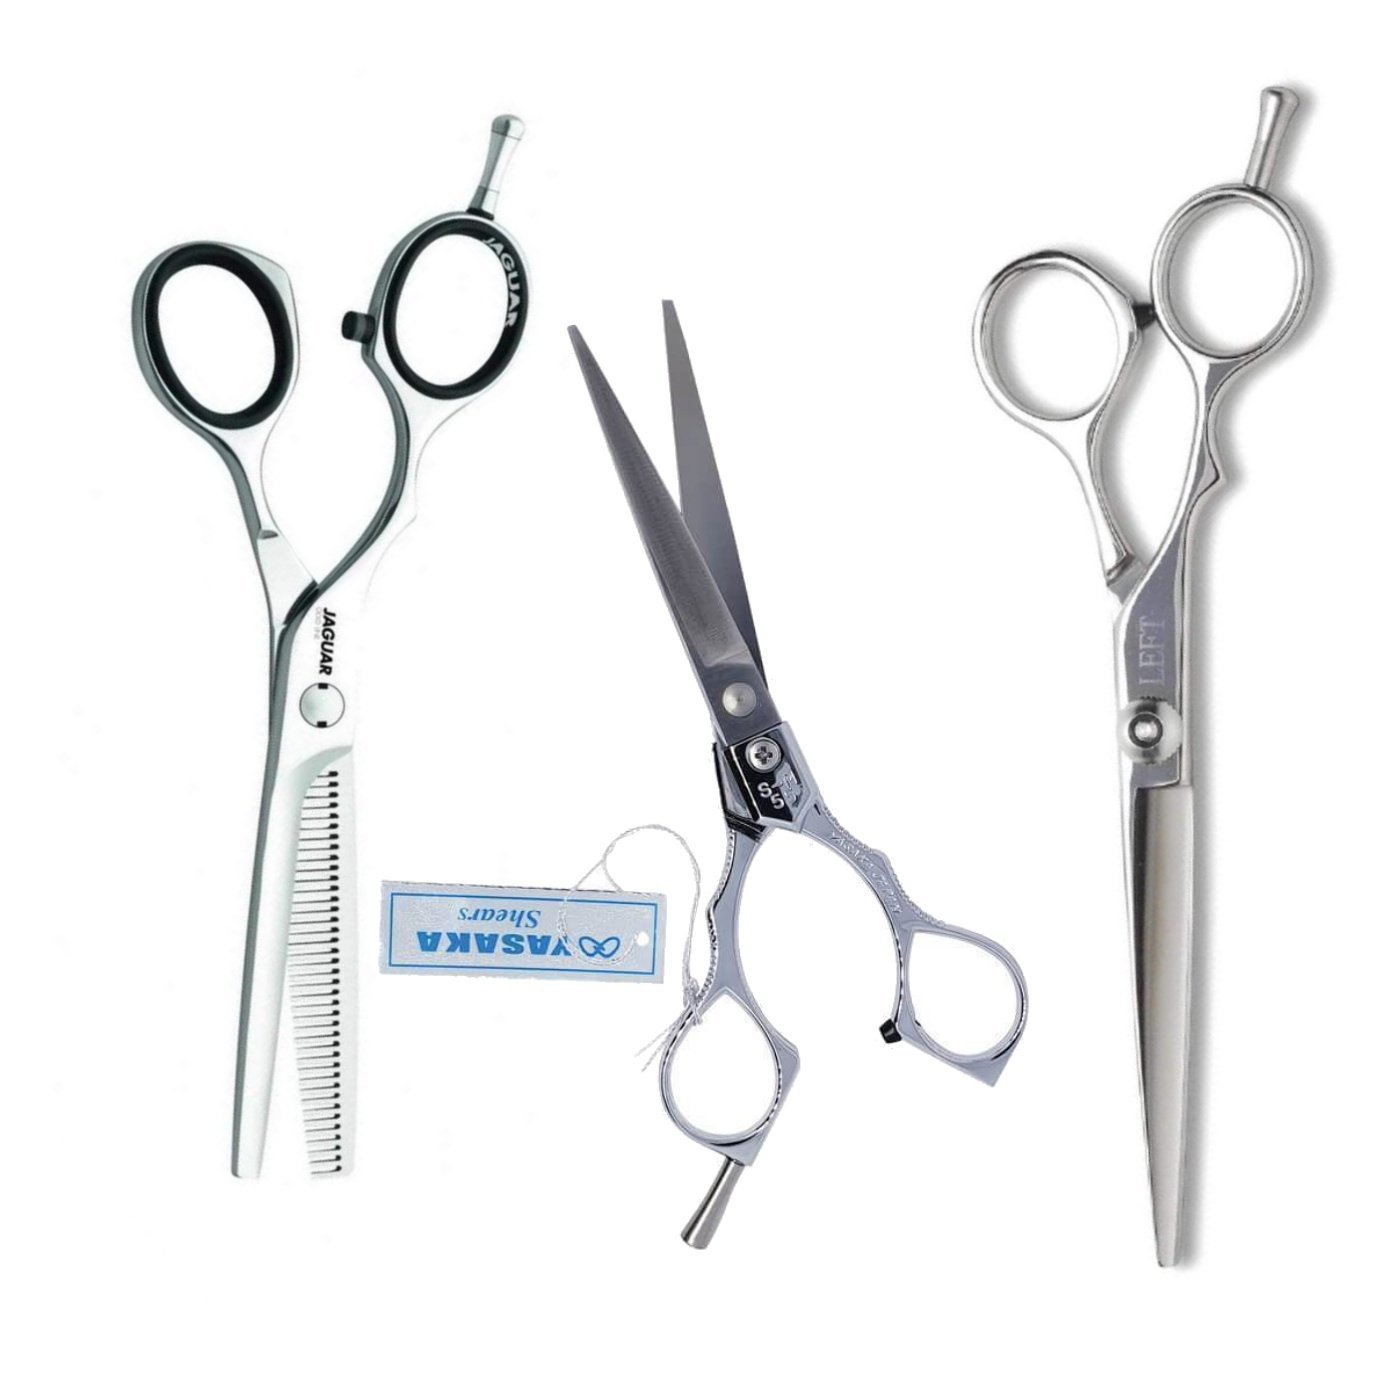 Straight & Offset Scissor Handle Differences | Ergonomic Scissor Guide - Scissor Hub Australia